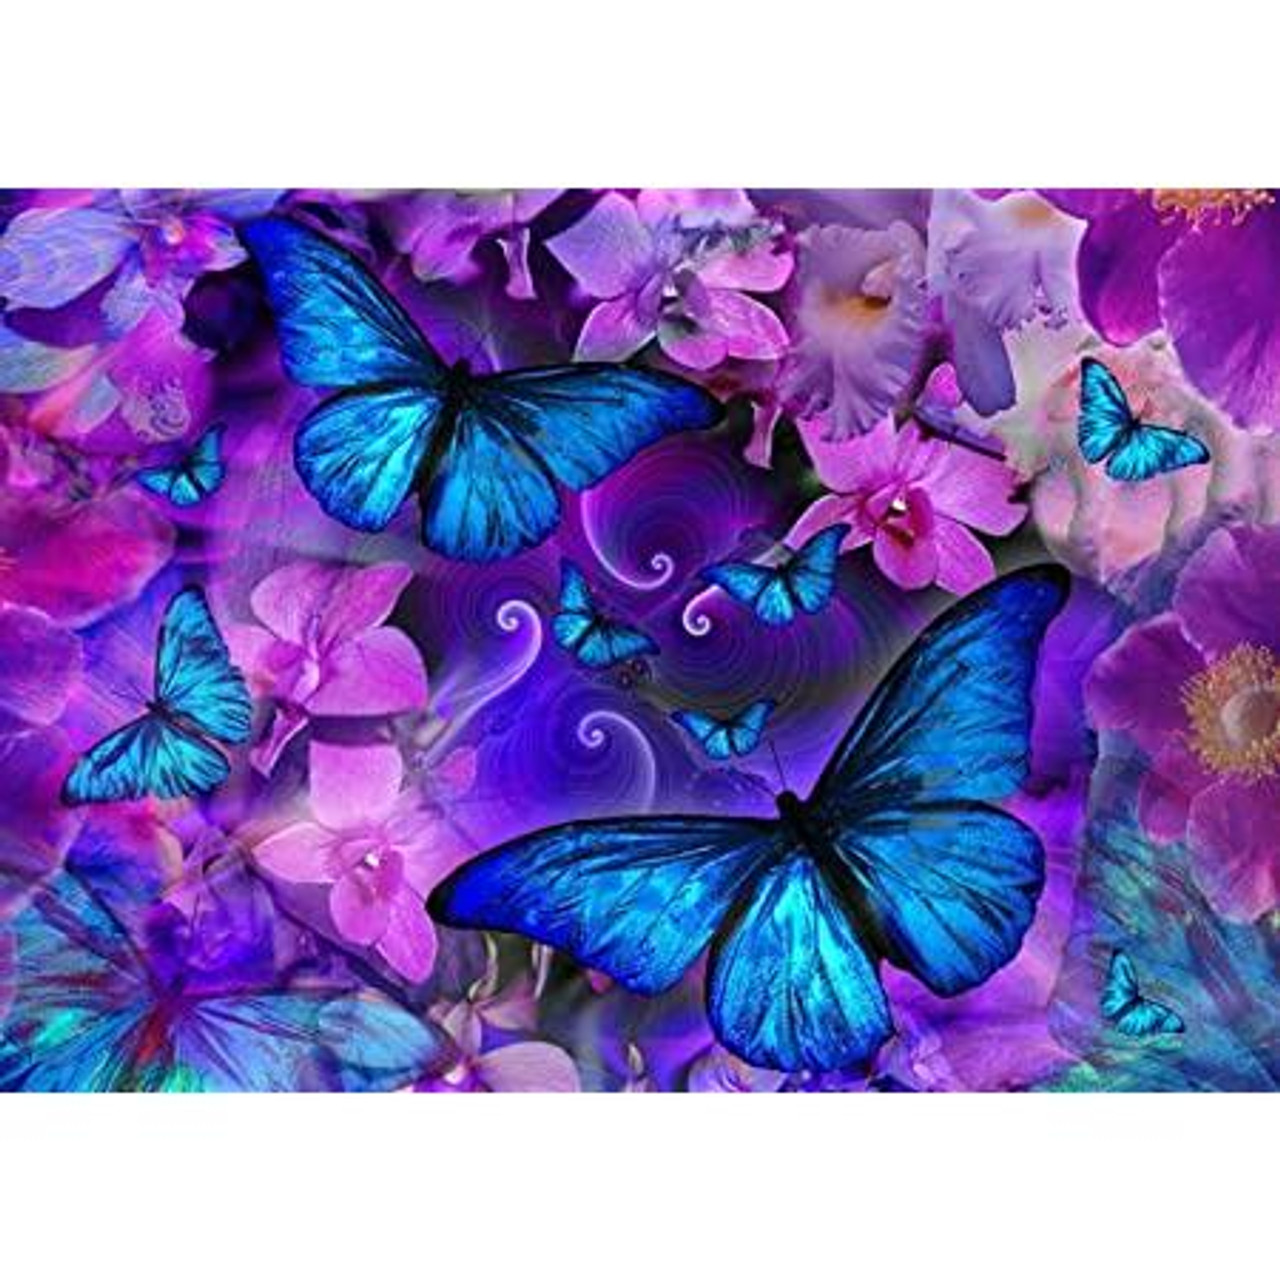 5D Diamond Painting Glowing Purple and Blue Butterfly Kit - Bonanza  Marketplace